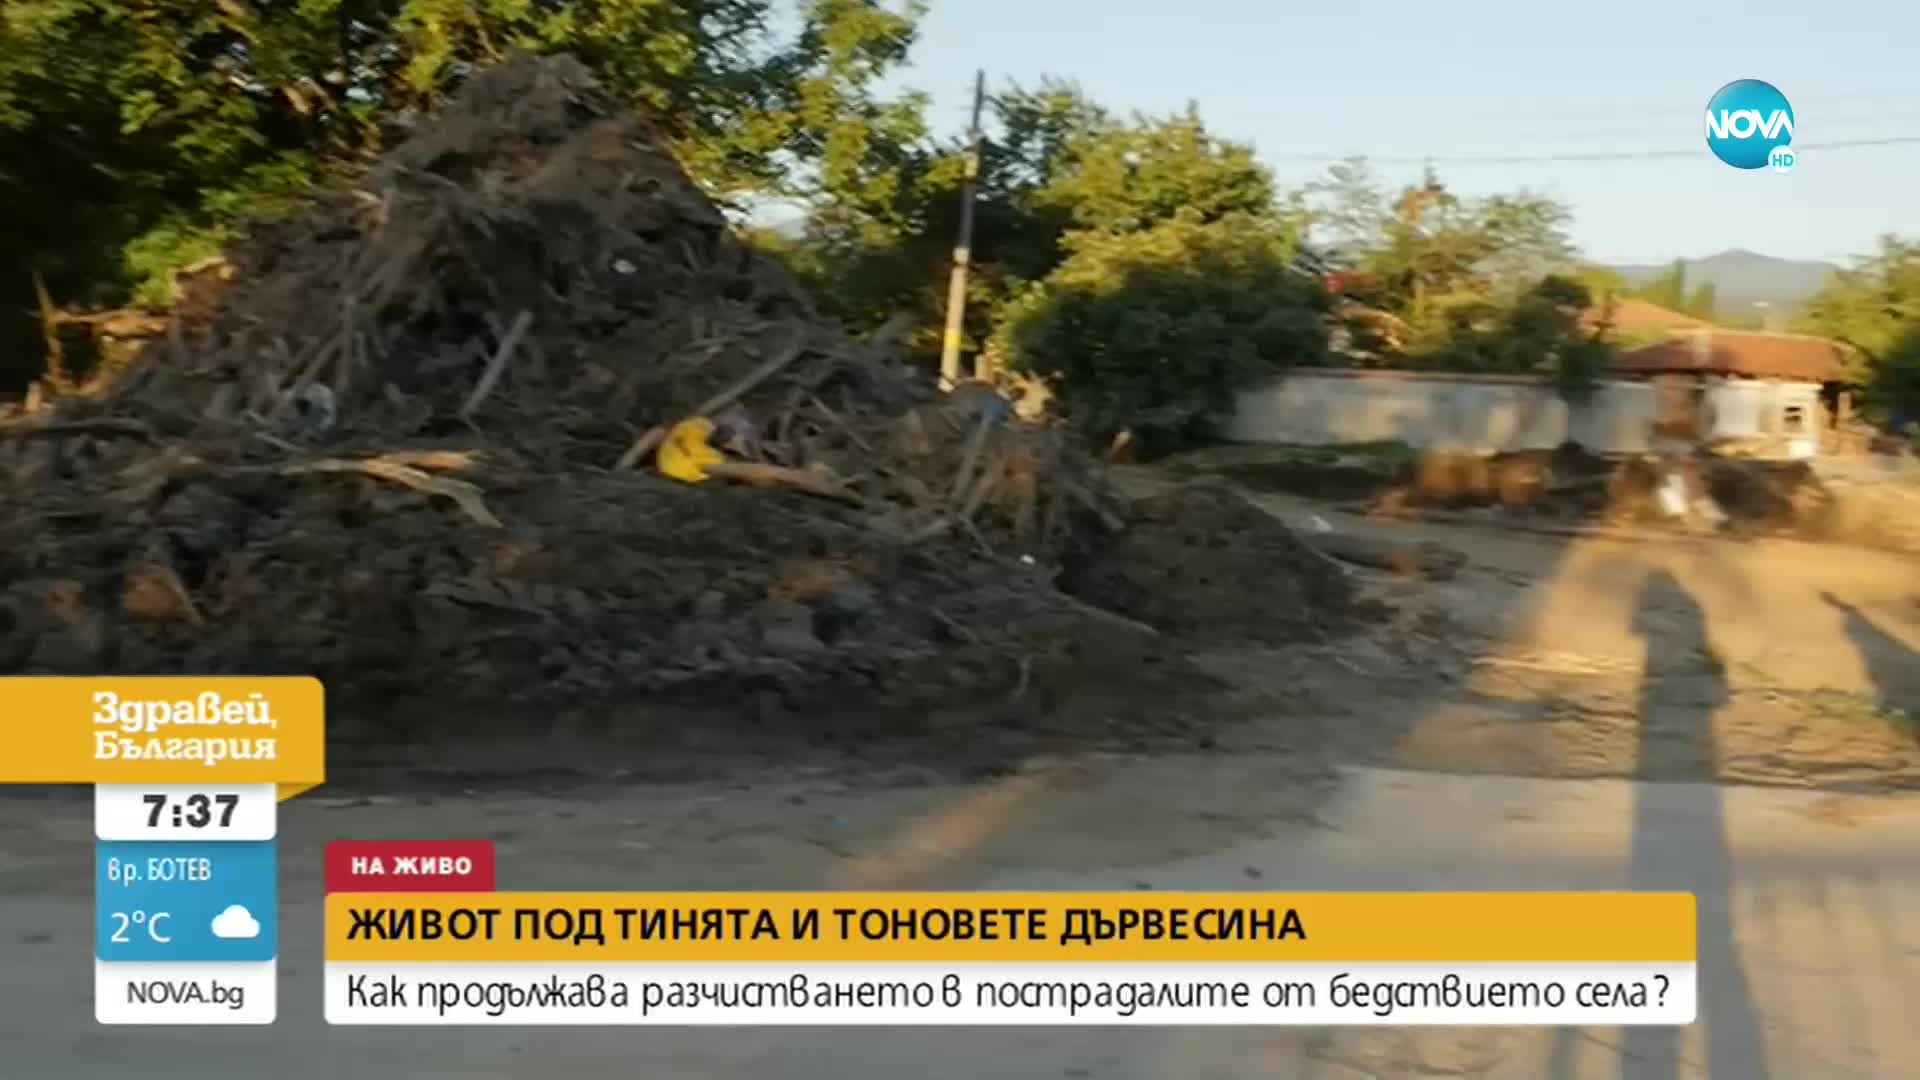 Кметът на Карлово: Щетите от наводненията са за над 60 млн. лв.